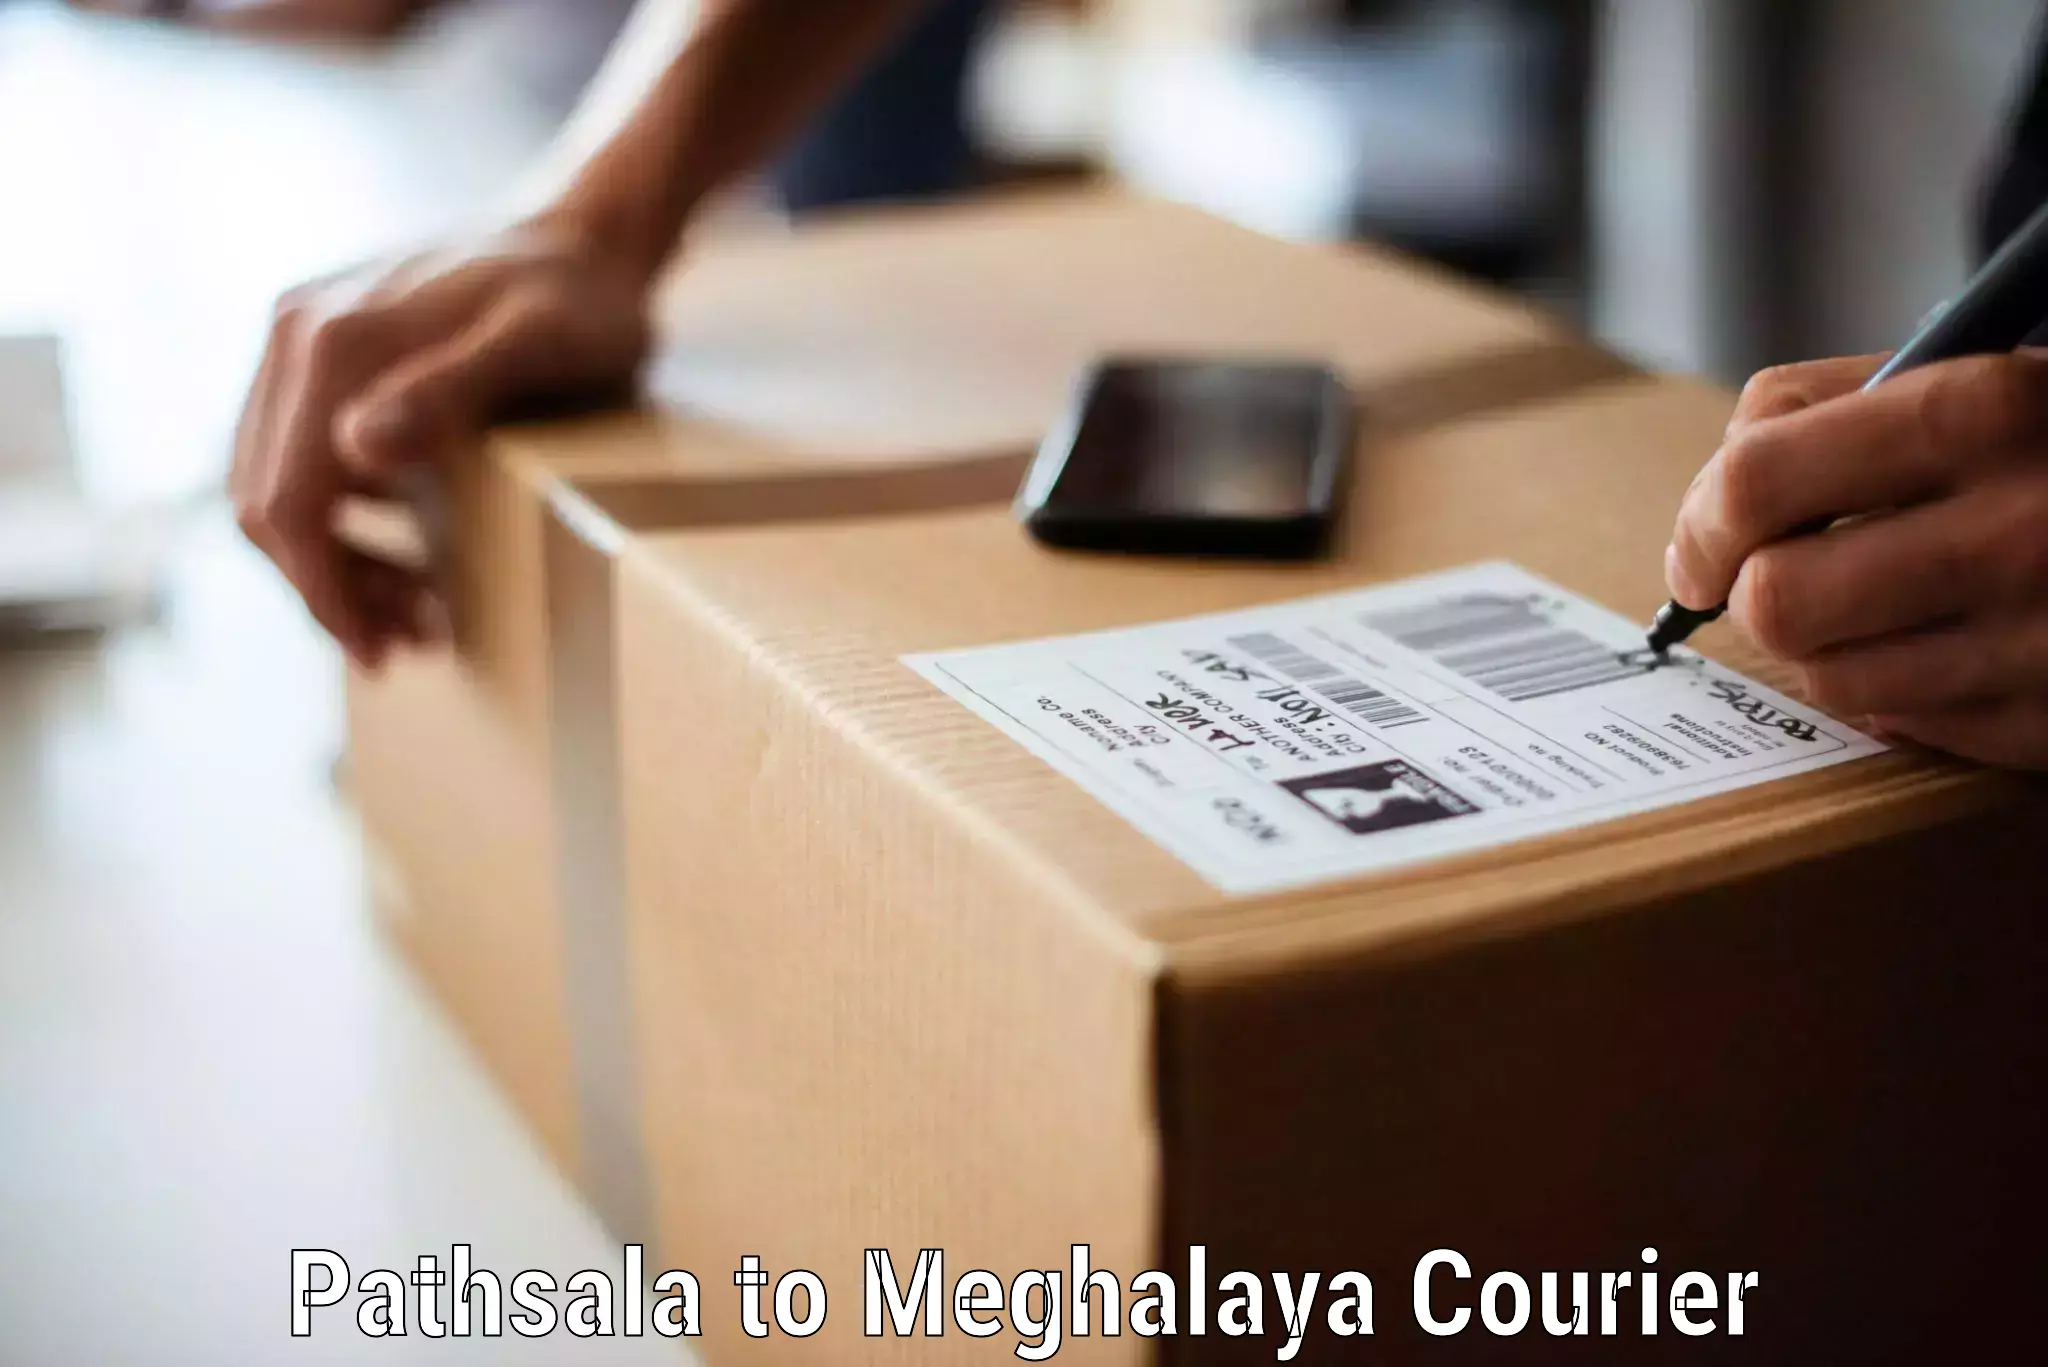 Furniture transport and storage Pathsala to Meghalaya